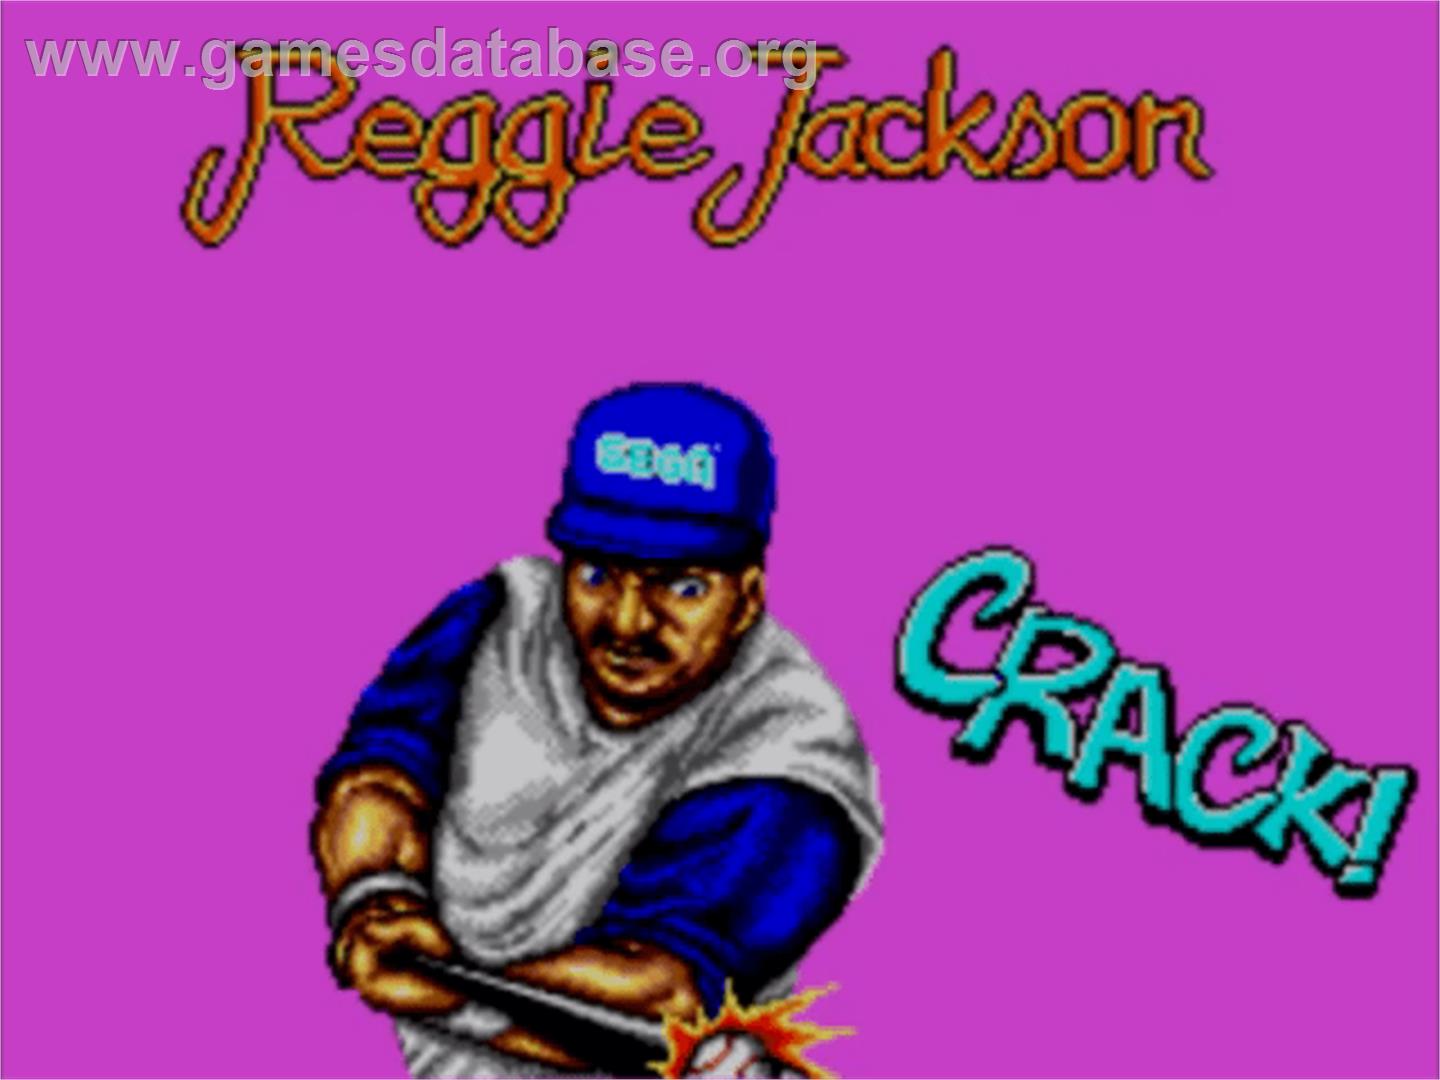 Reggie Jackson Baseball - Sega Master System - Artwork - Title Screen